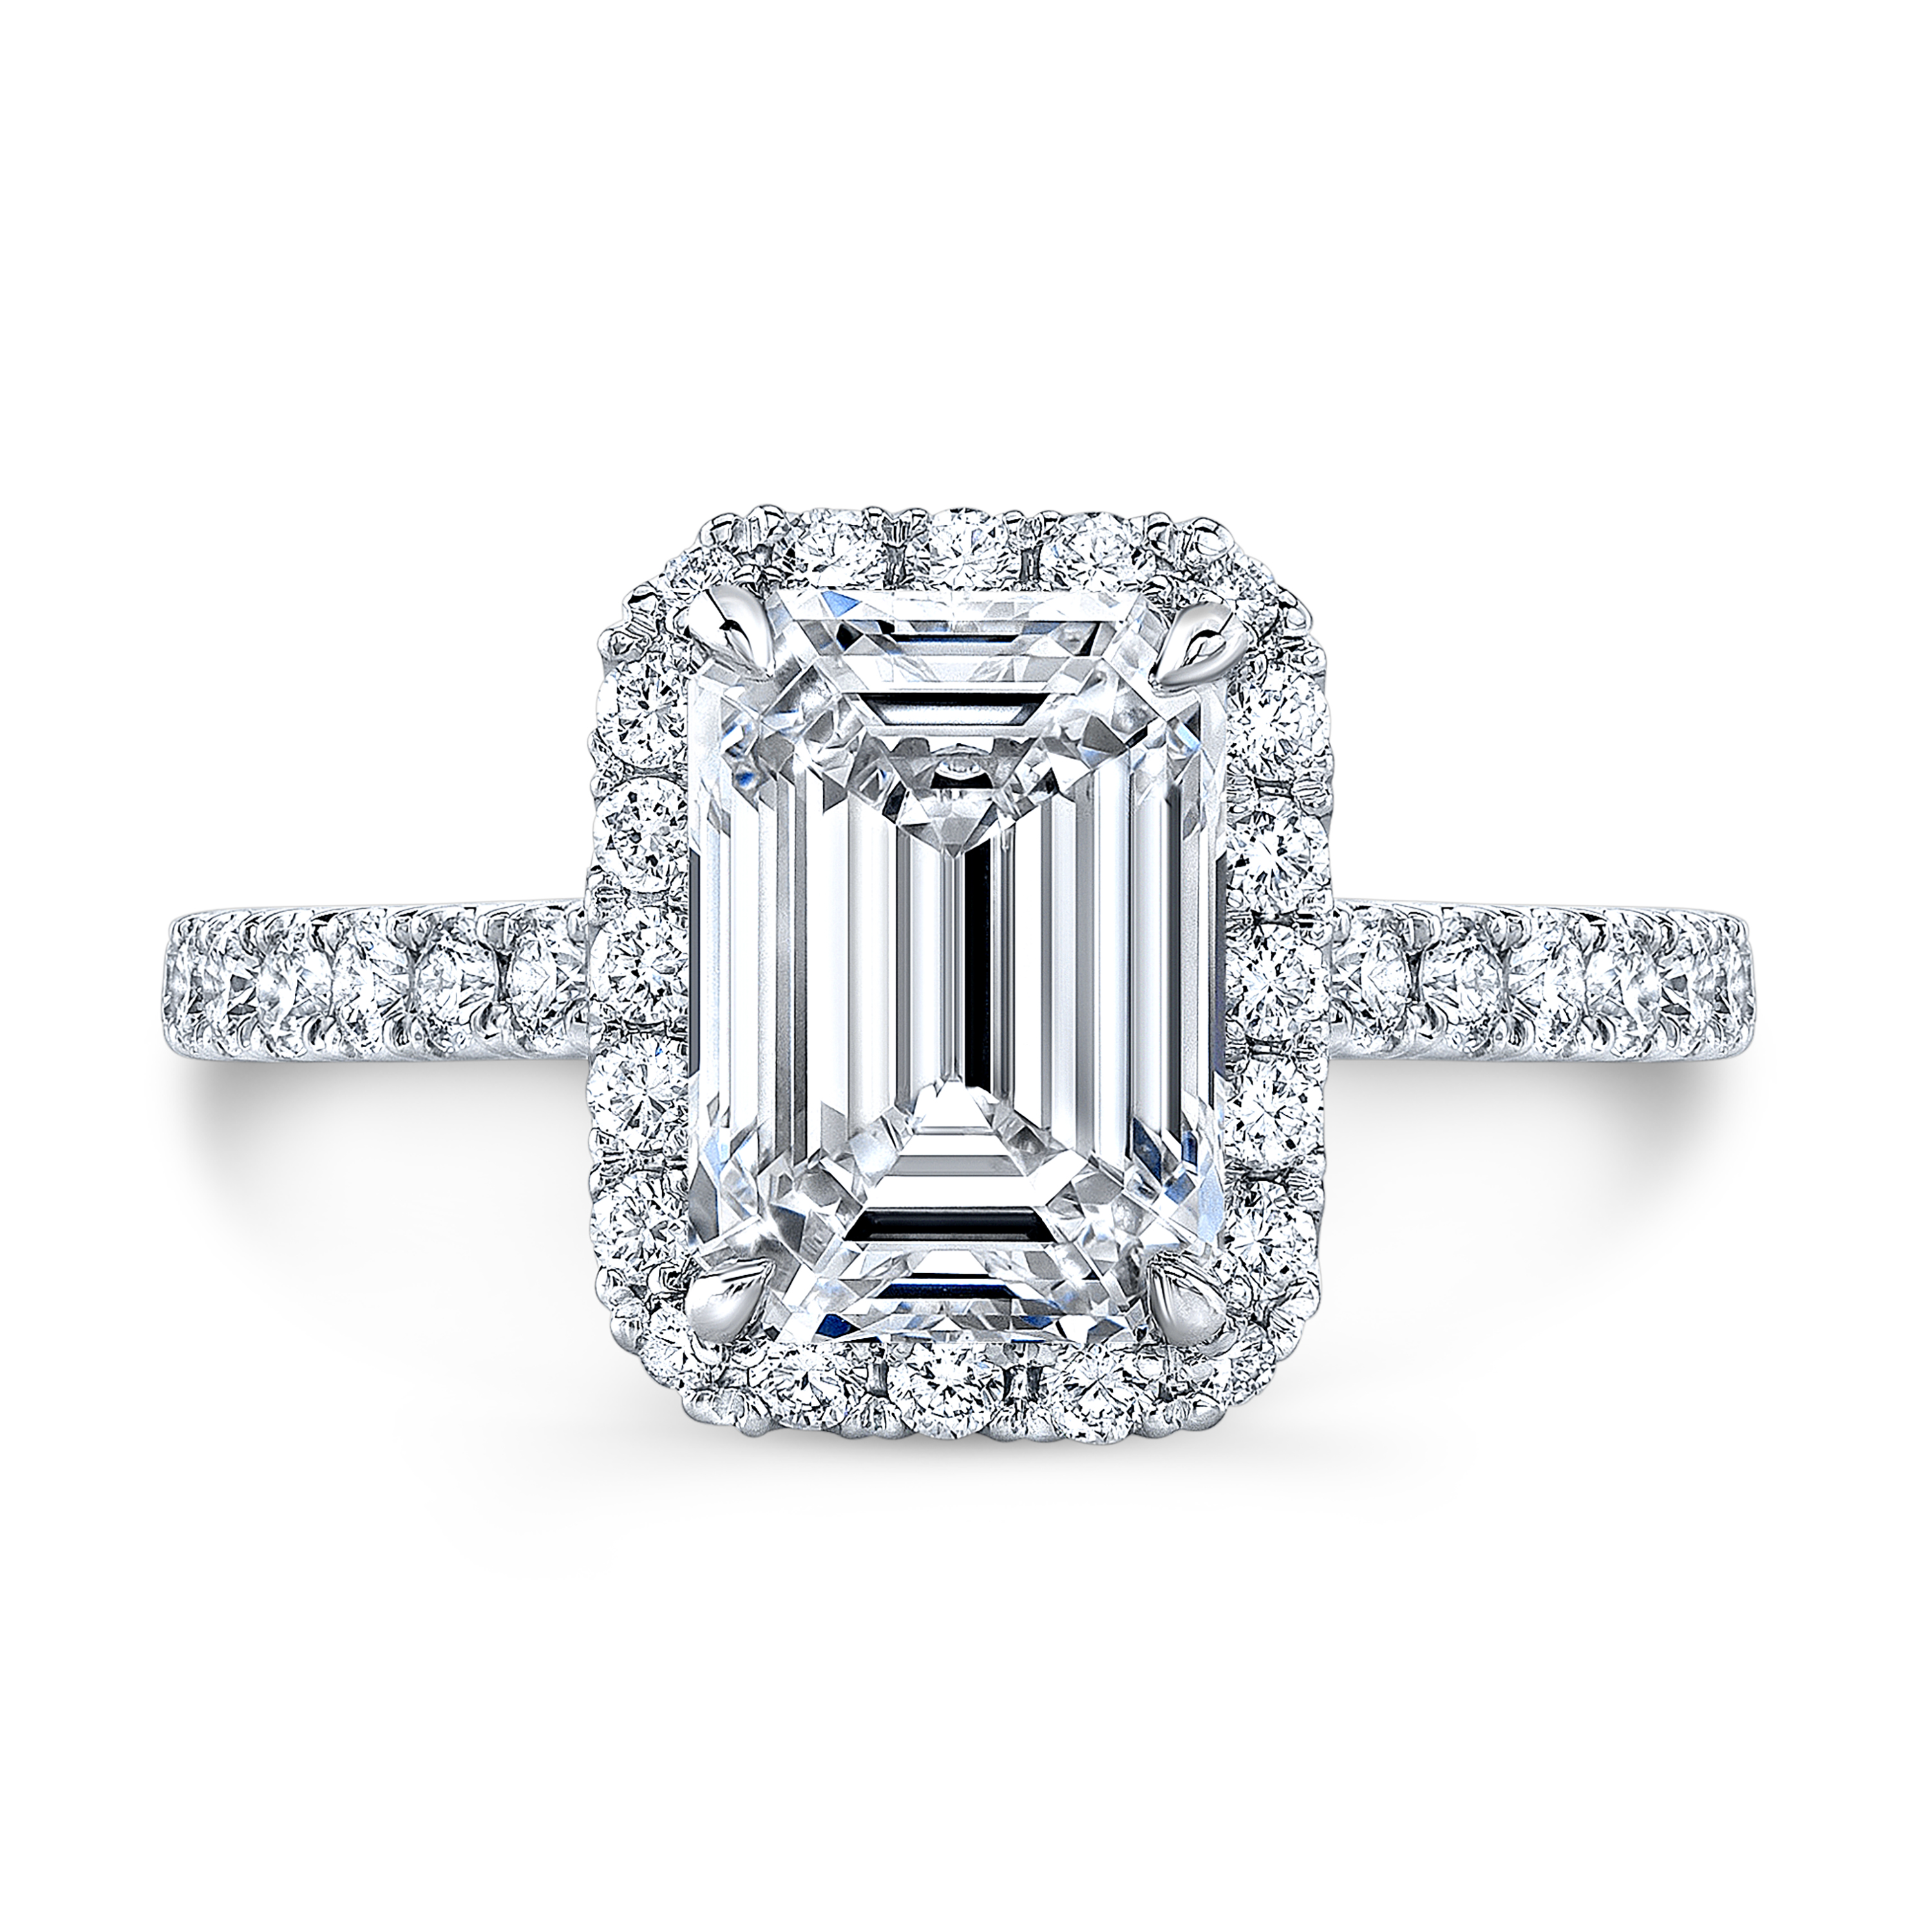 Real diamond Wedding Ring Diamond Yellow Color Diamond 100/%Natural Diamond Best Price Diamond kv-1 Emerald Shape Diamond